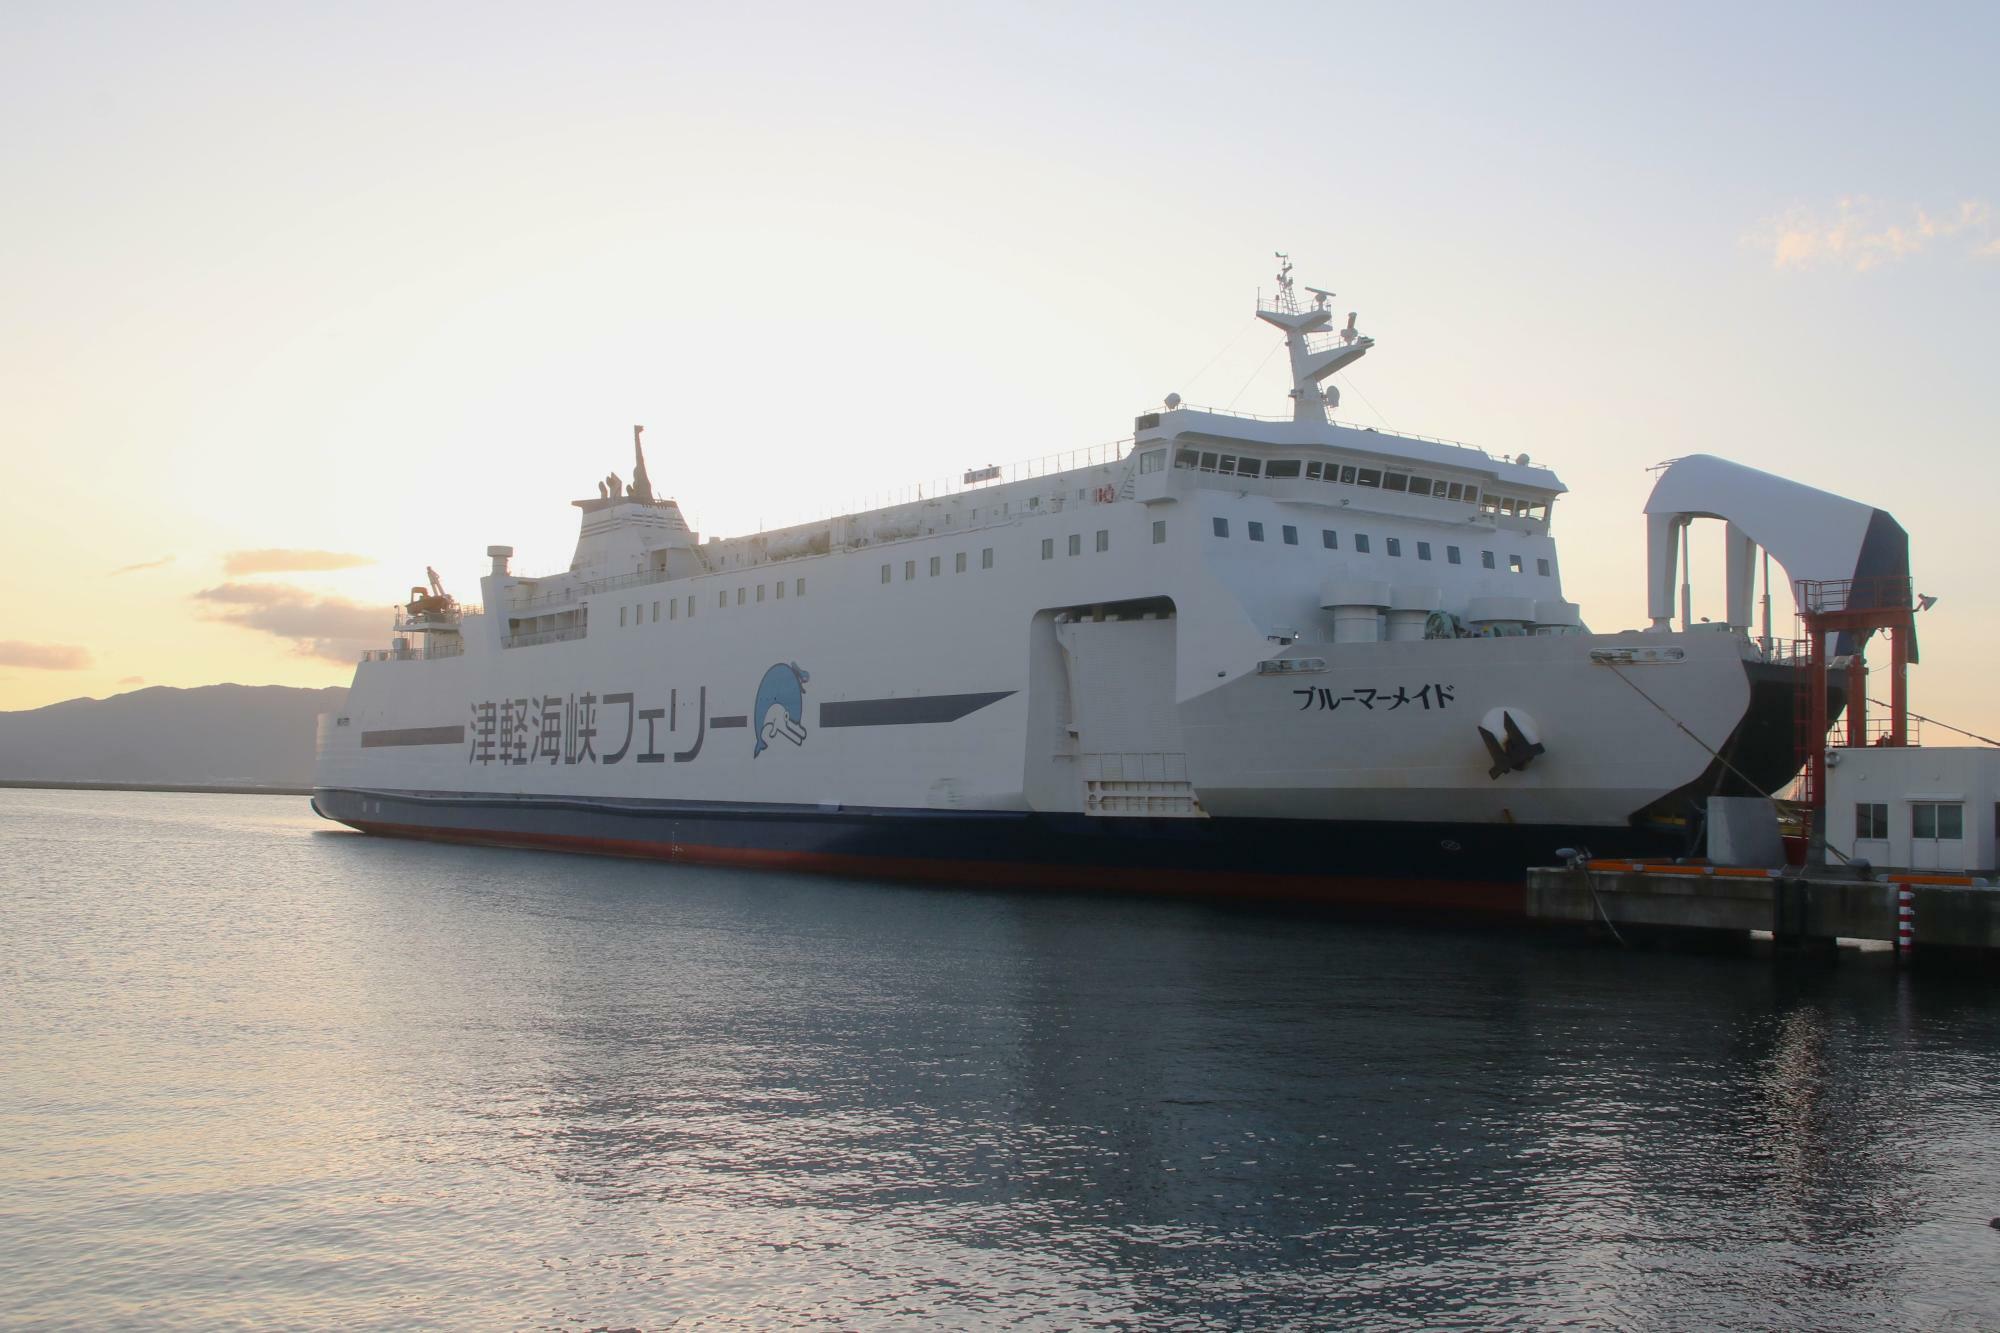 「ブルーマーメイド」は津軽海峡Fターミナルから離れたバース使用